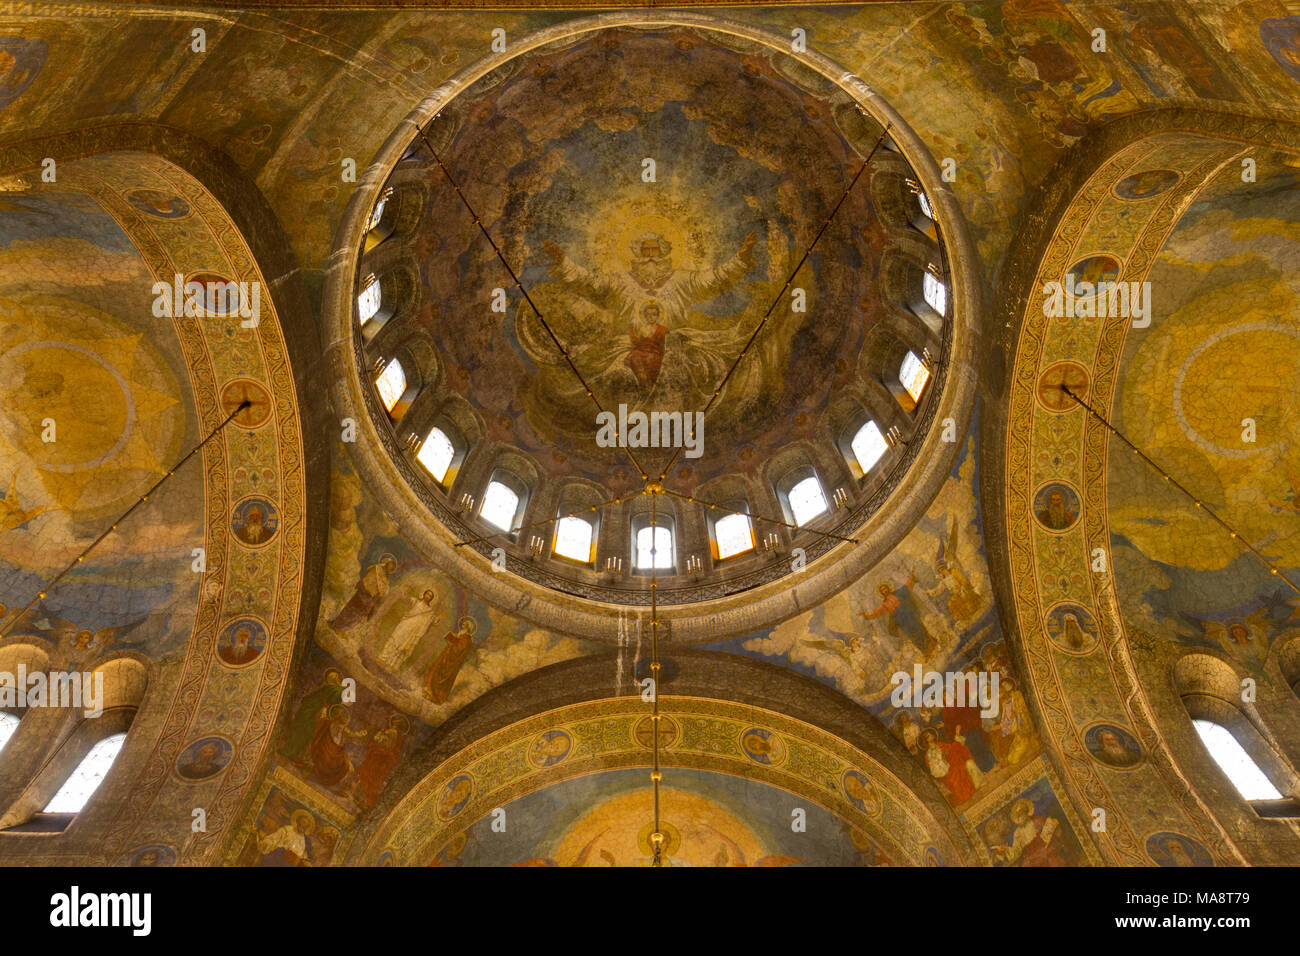 À l'intérieur de la coupole centrale à l'intérieur de la Cathédrale Saint Alexandar Nevski à Sofia, Bulgarie. Banque D'Images